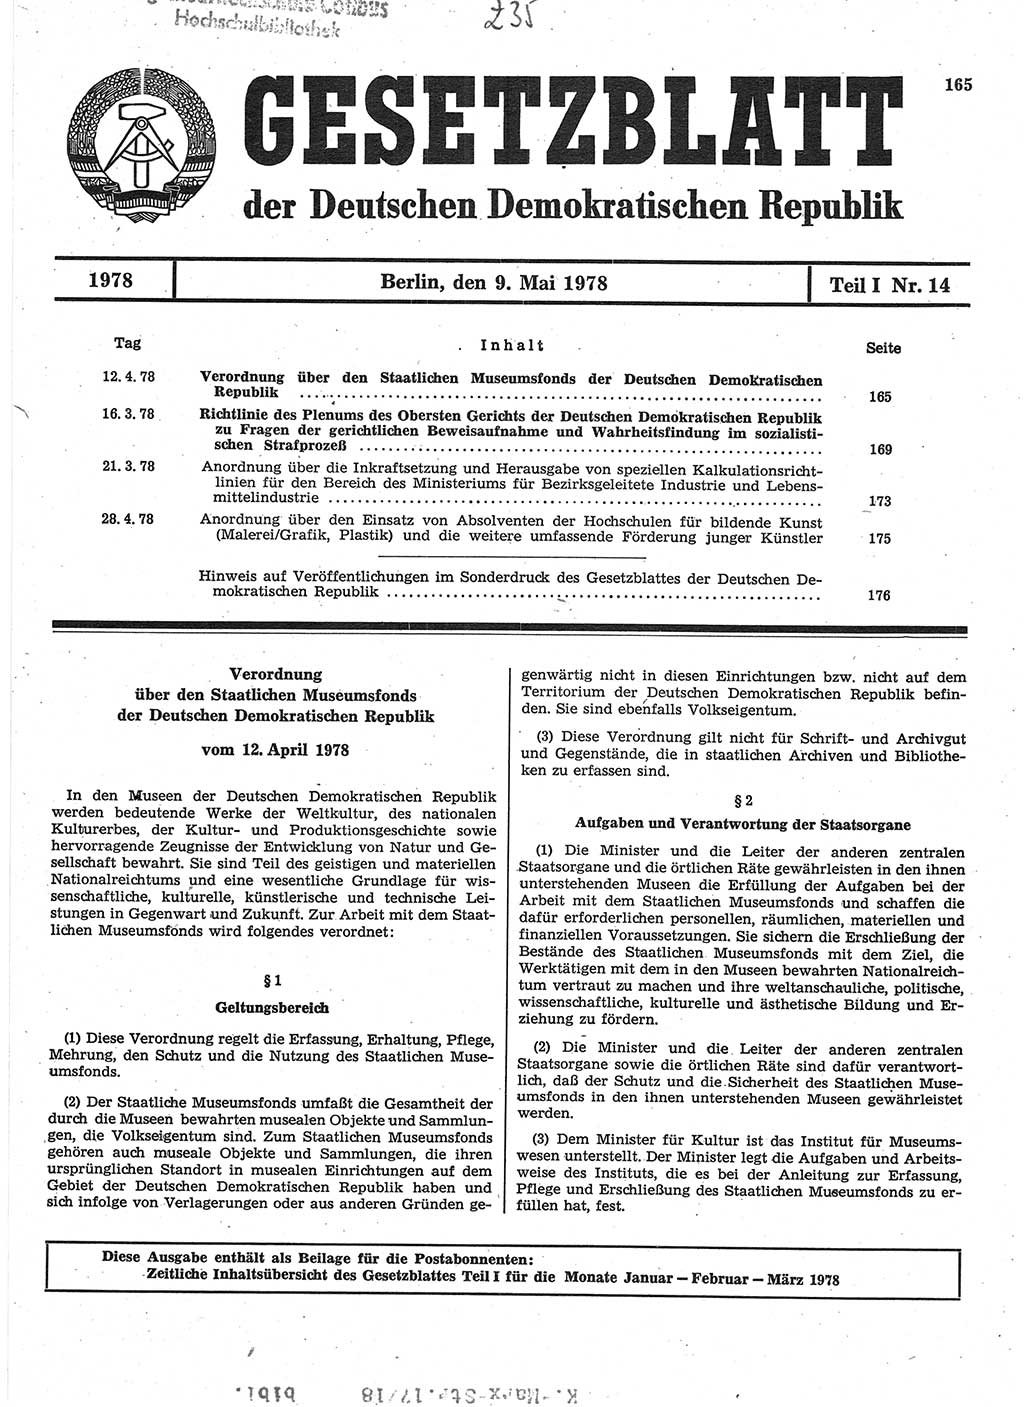 Gesetzblatt (GBl.) der Deutschen Demokratischen Republik (DDR) Teil Ⅰ 1978, Seite 165 (GBl. DDR Ⅰ 1978, S. 165)